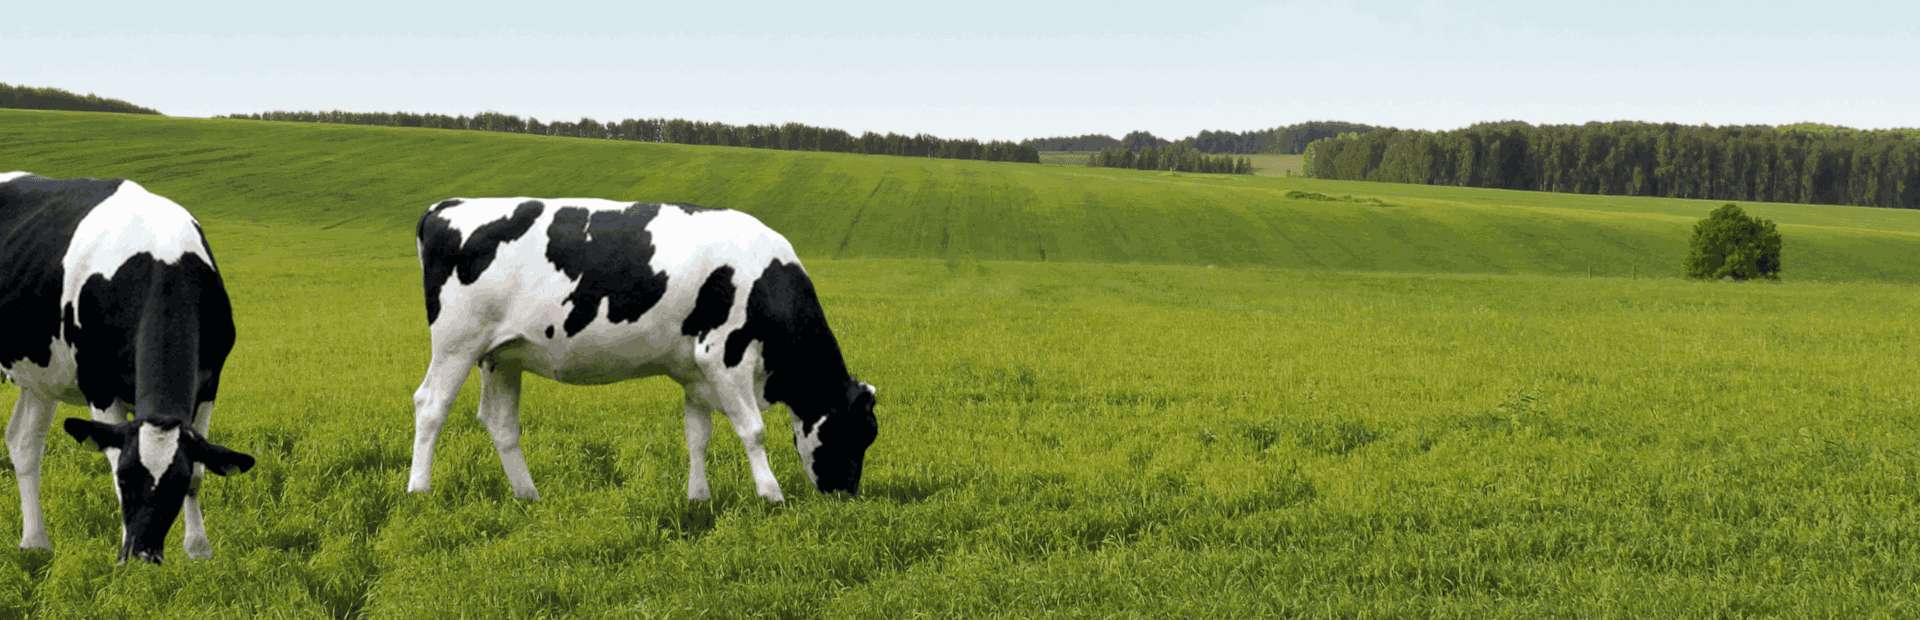 Slajd 1 - krowy na polanie